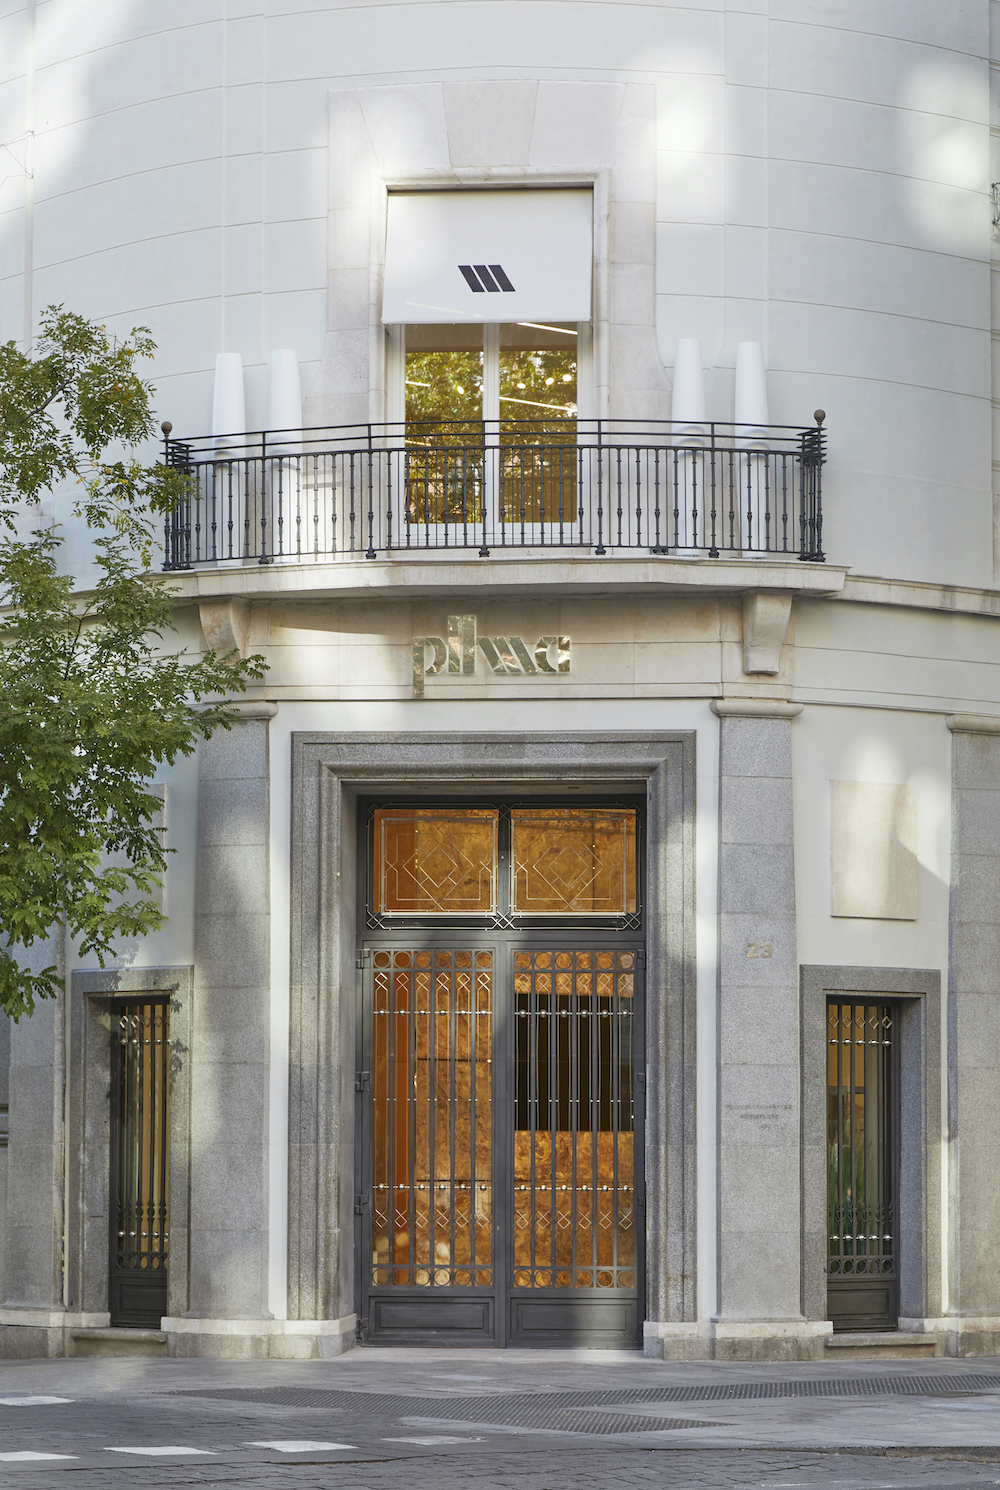 imagen 9 de Pilma, la firma del disseny, abre una nueva tienda en Madrid.